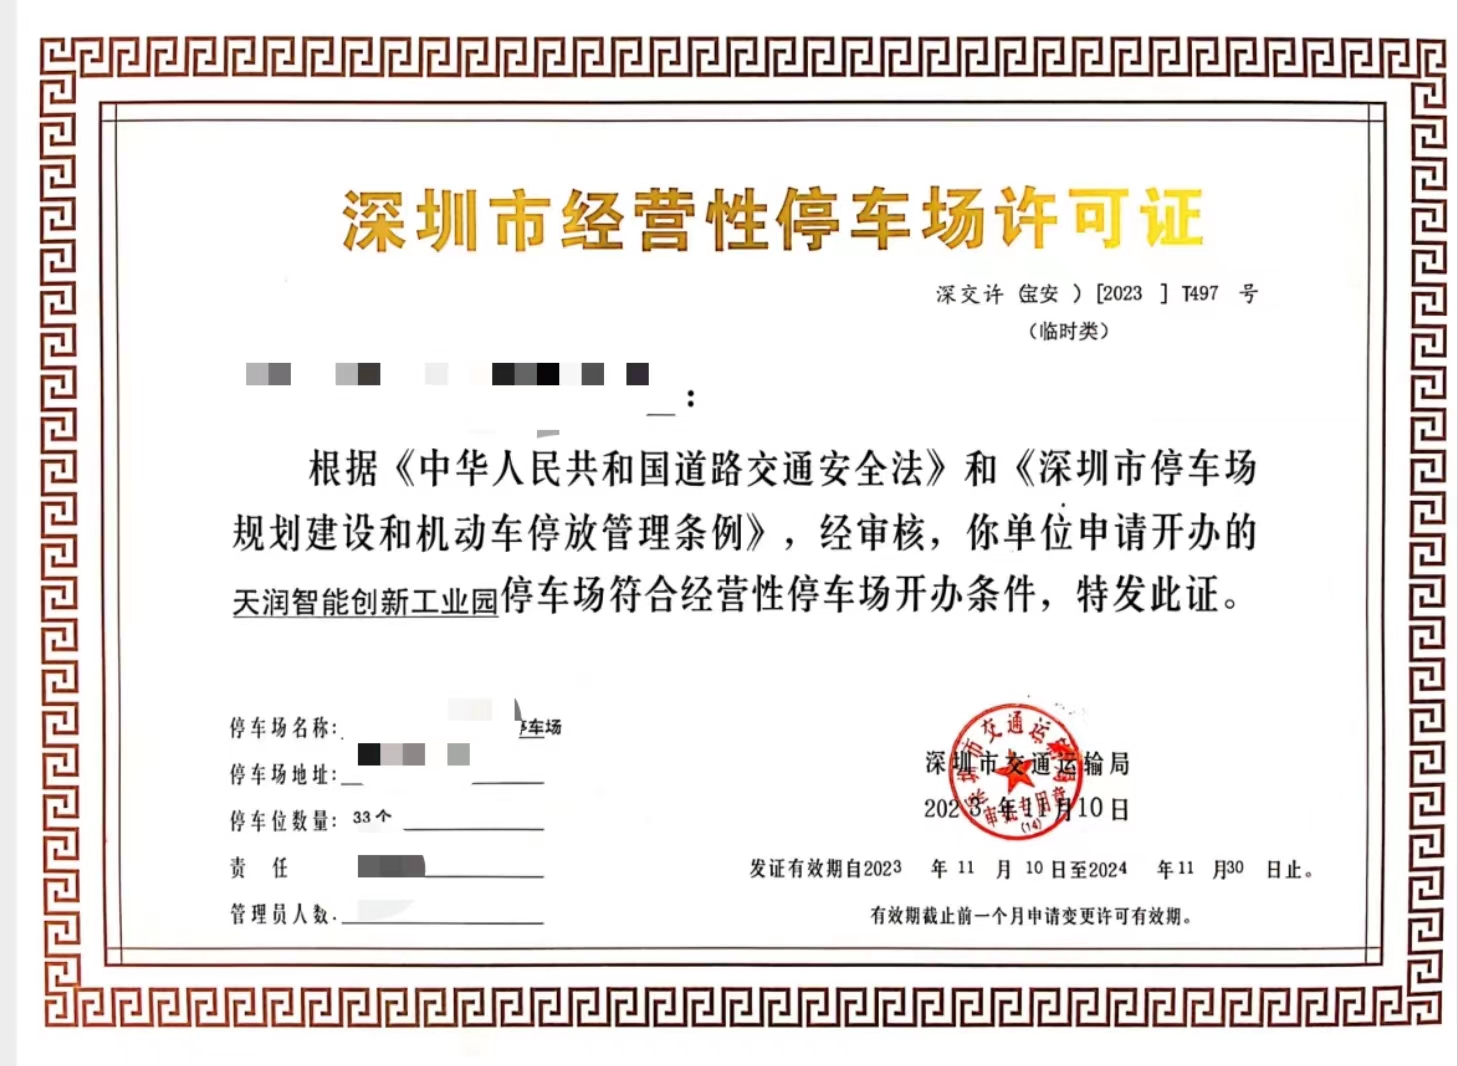 《深圳市经营性停车场许可证》攻略:办理指南详解-停车场运营